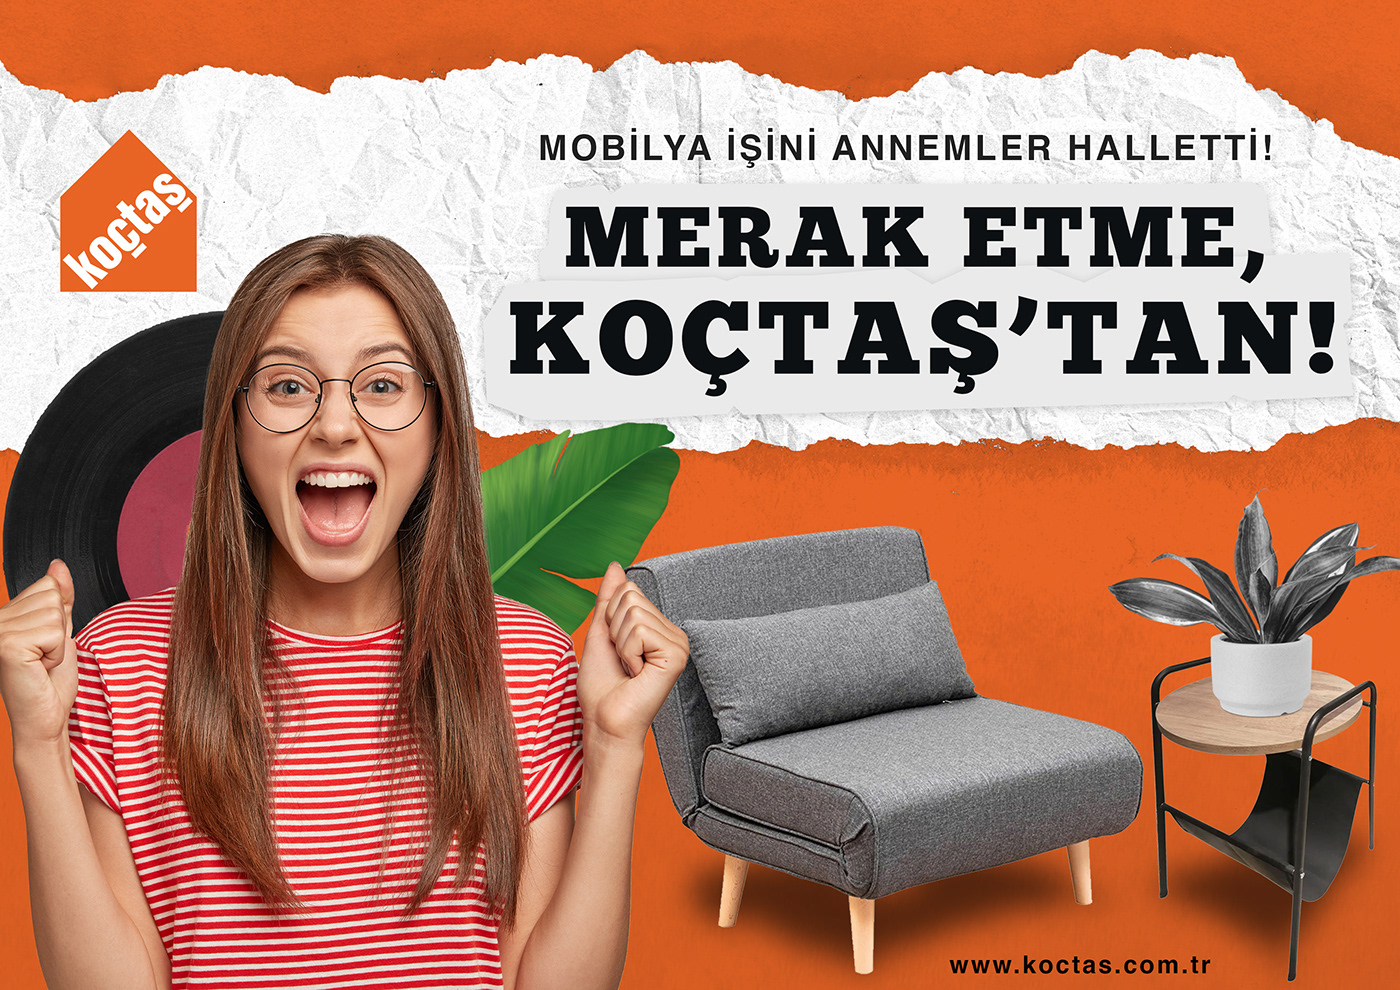 furniture Social media post ads poster Poster Design